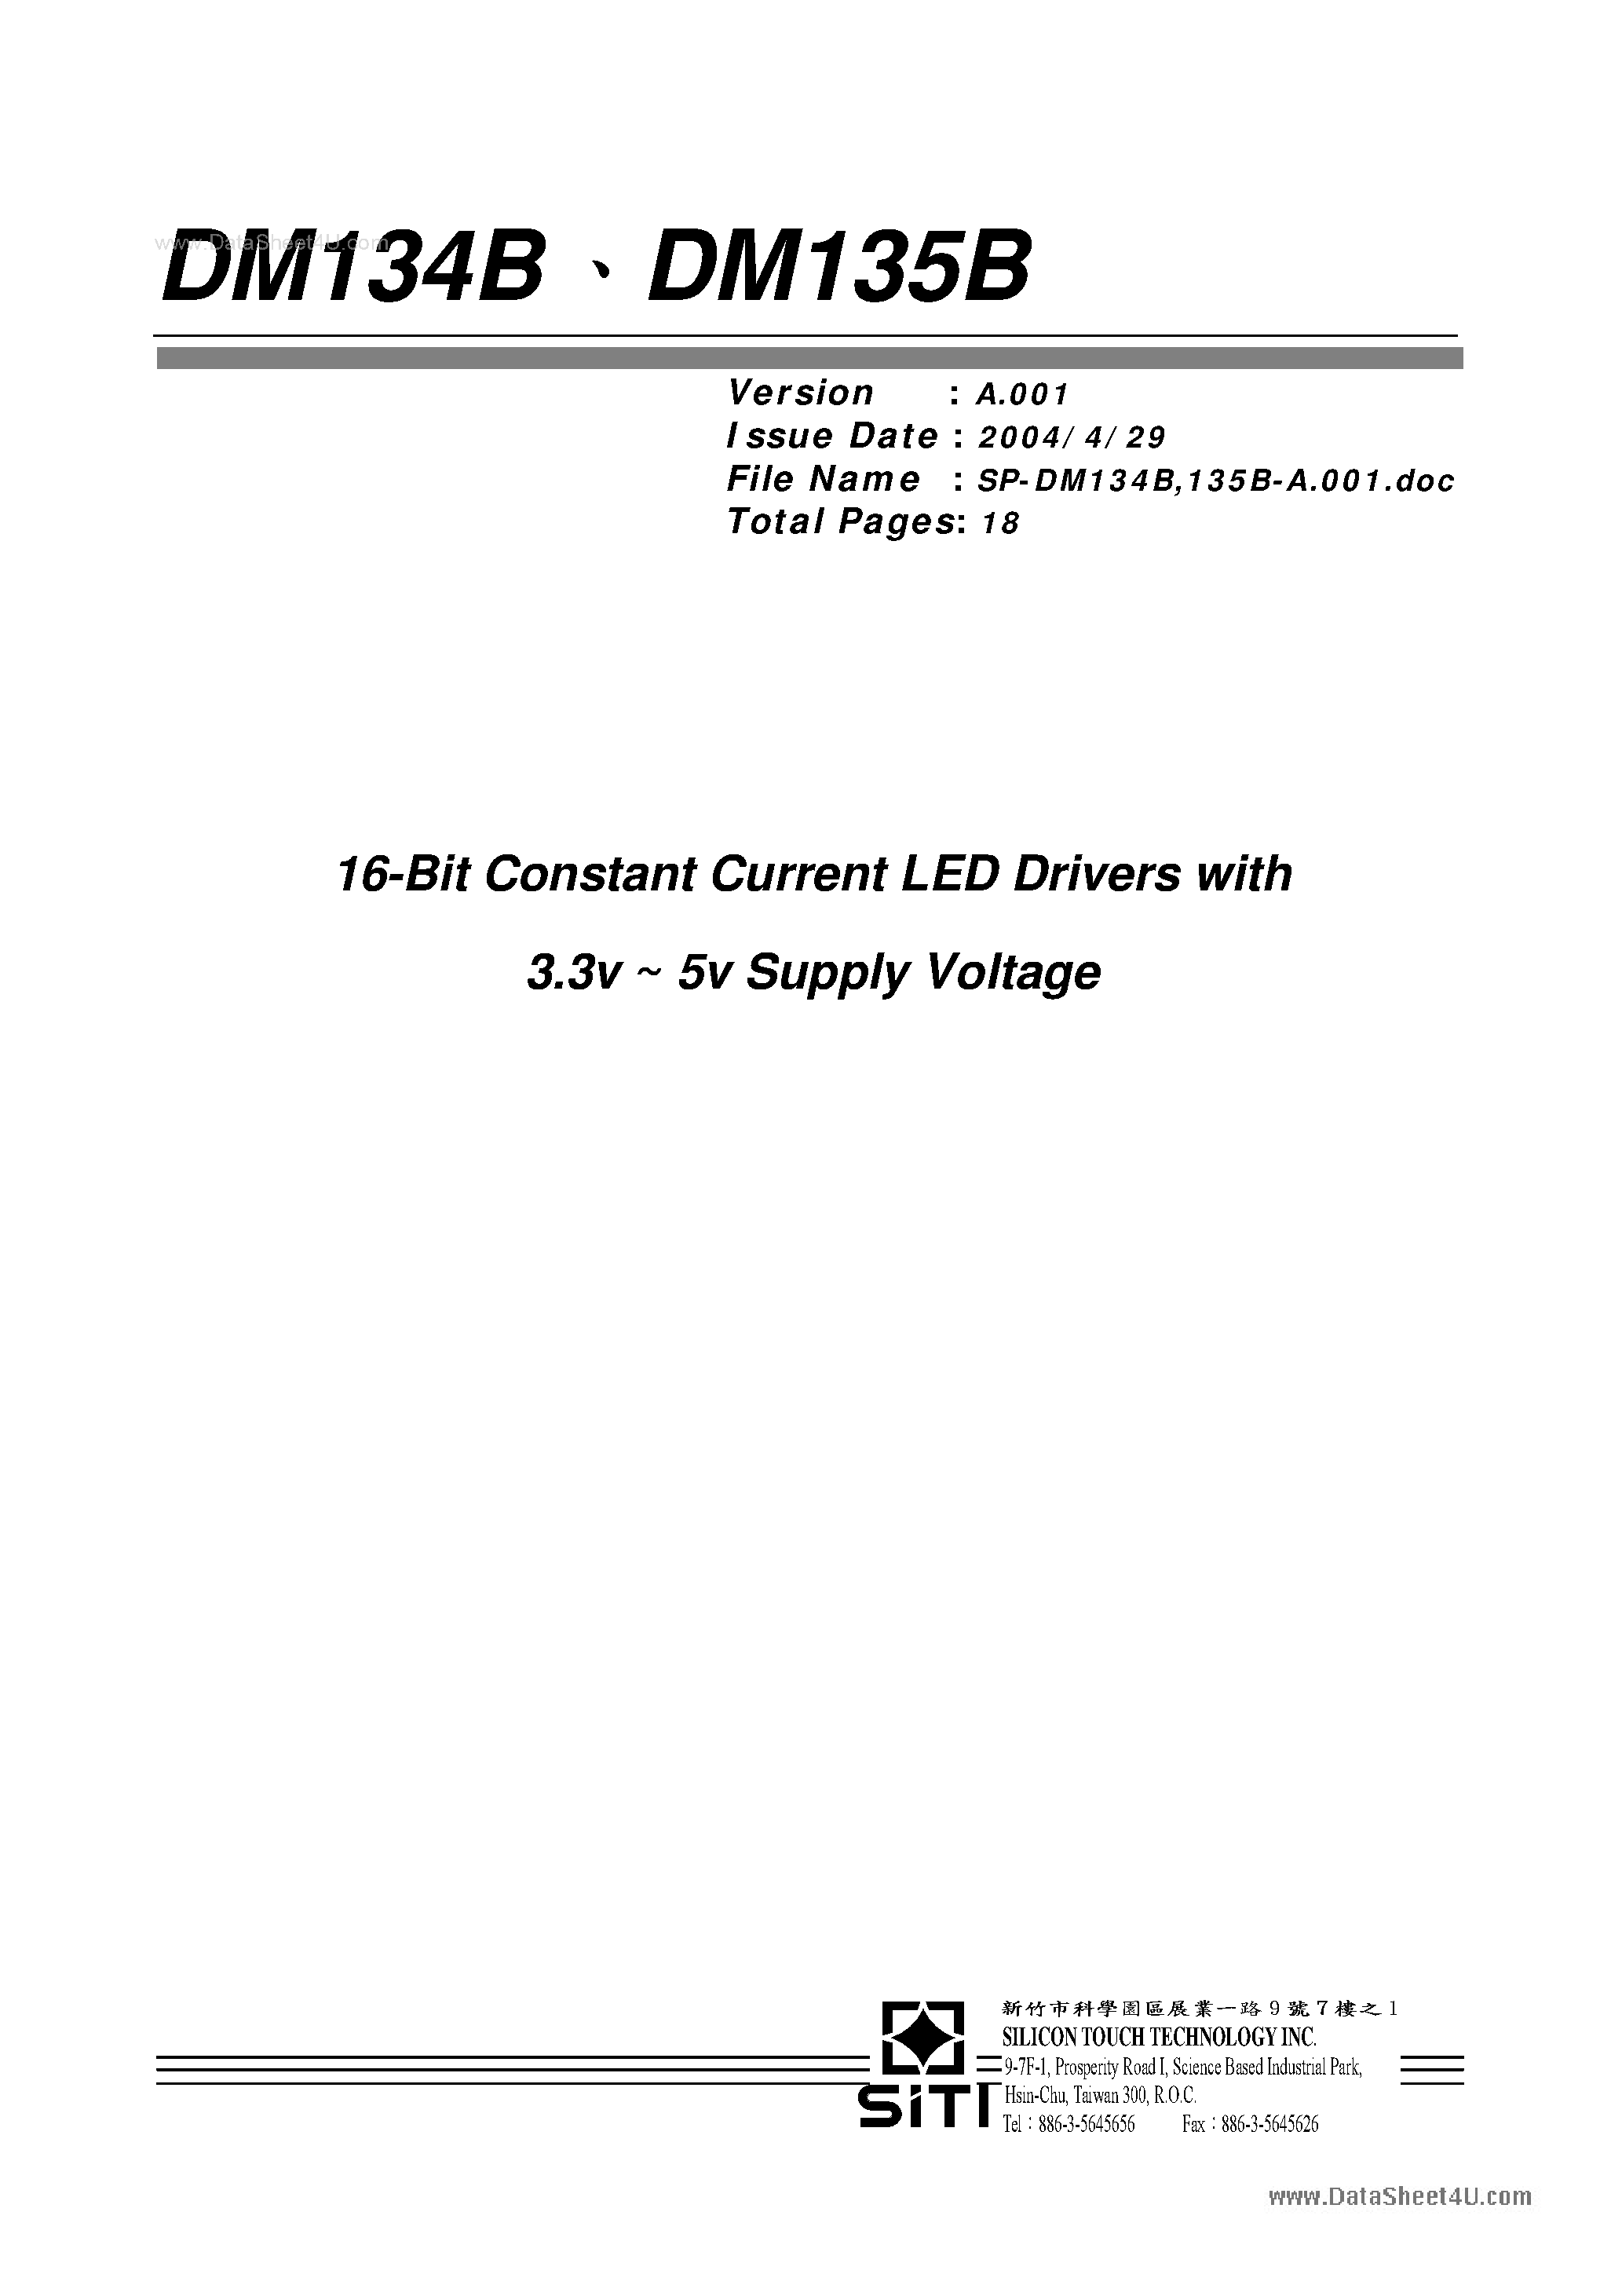 Даташит DM134B - (DM134B / DM135B) 16 BIT CONSTANT CURRENT LED DRIVERS страница 1